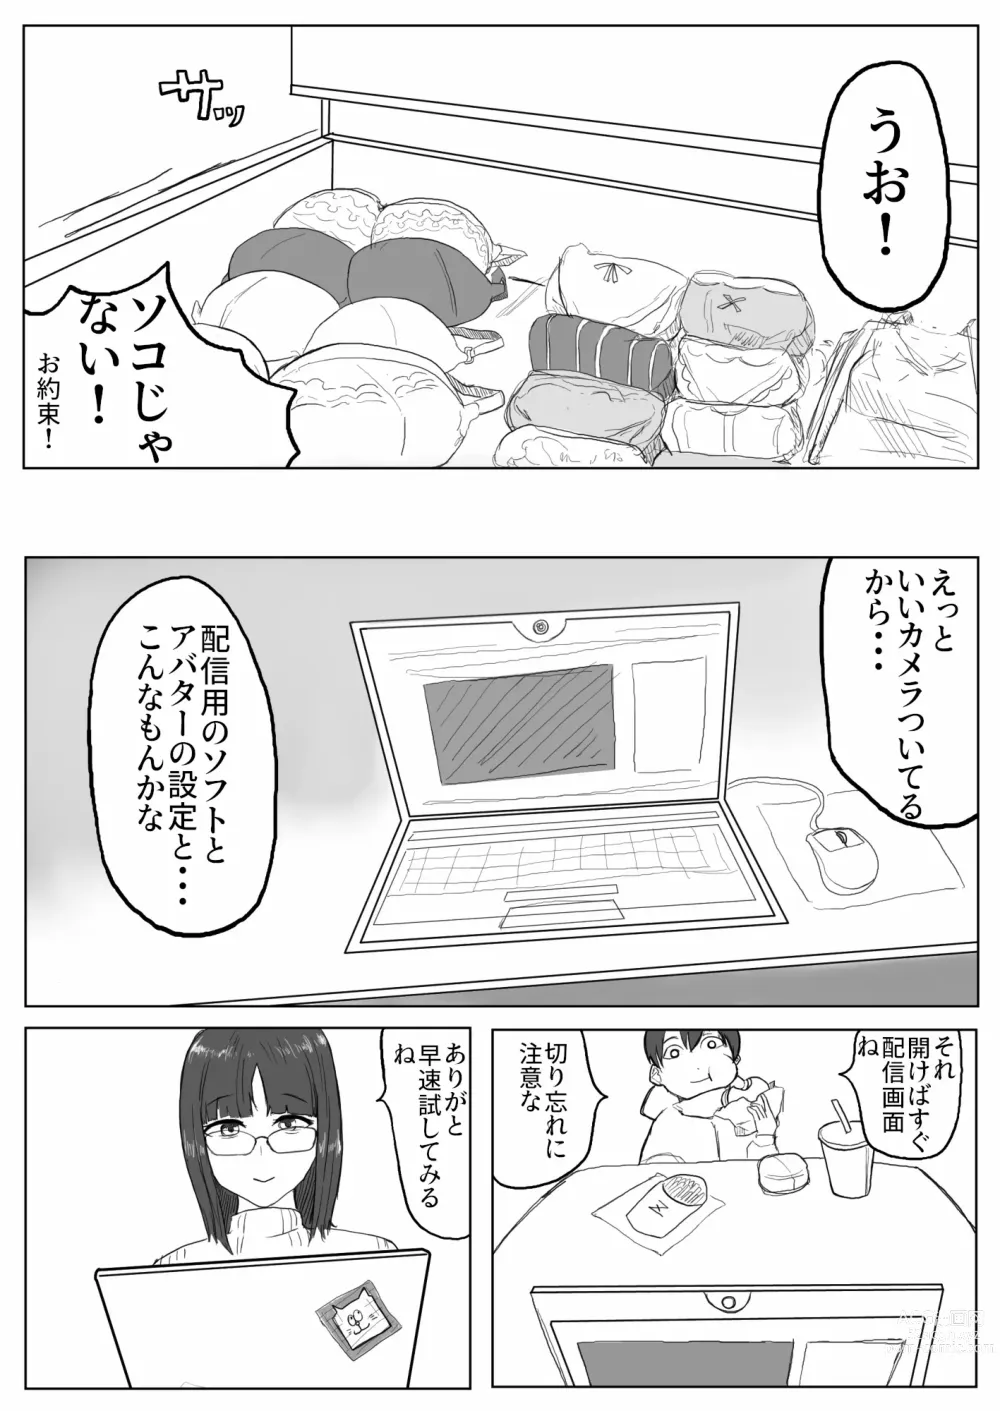 Page 7 of doujinshi Jimiko-chan no ntrre Namahousou